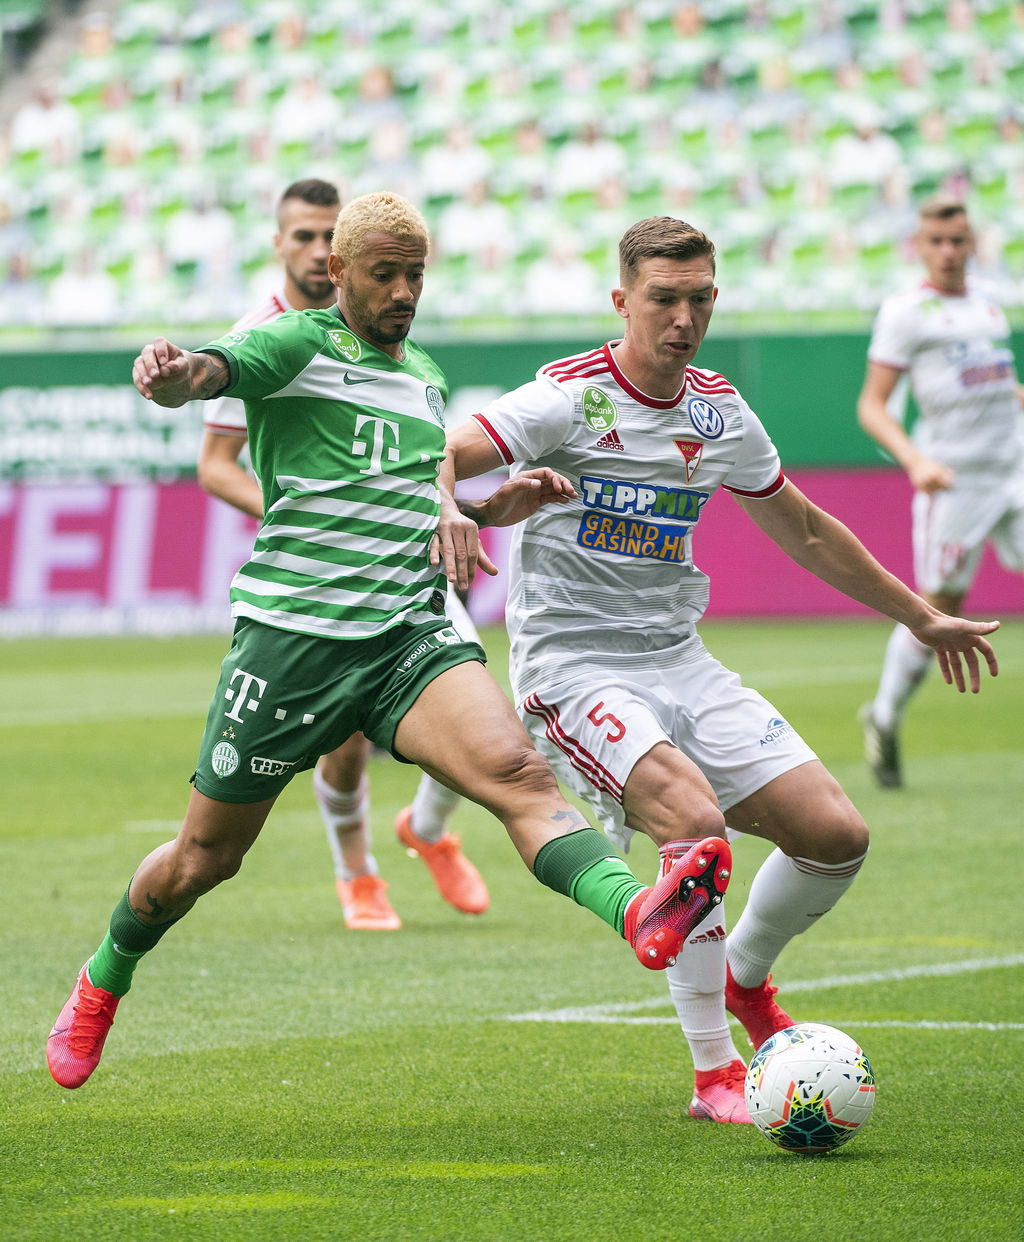 El actual campeón Ferencvaros vino de atrás para derrotar 2-1 al Debrecen, con lo que amplió su ventaja en la cima del torneo.